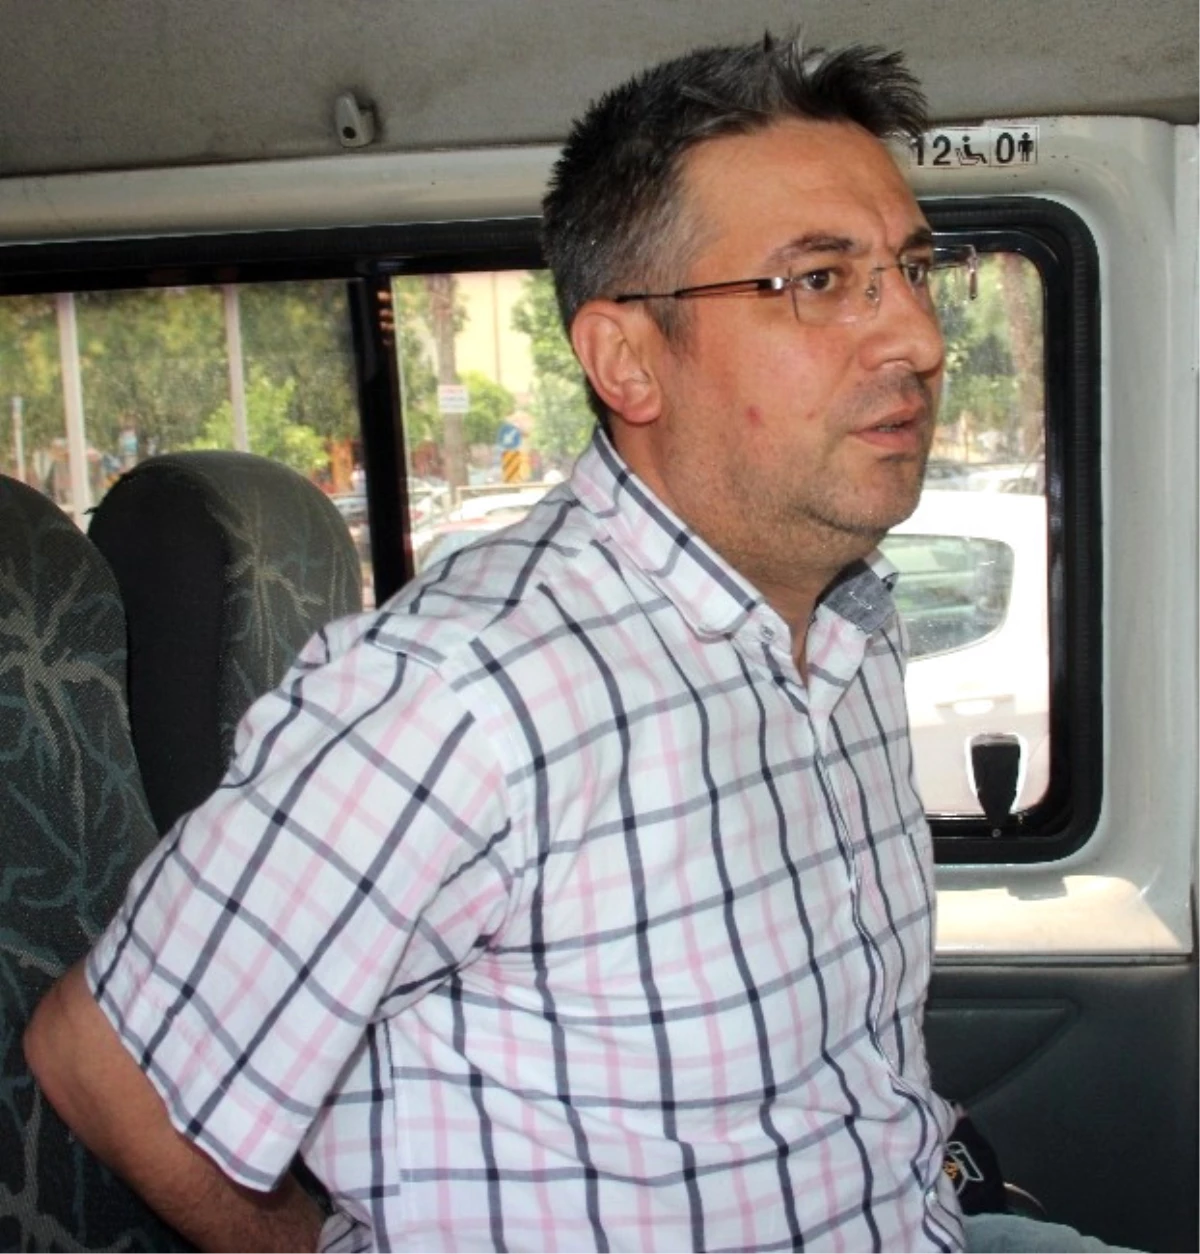 Adana Jandarma İstihbarat Şube Müdürü Adliyeye Sevk Edildi